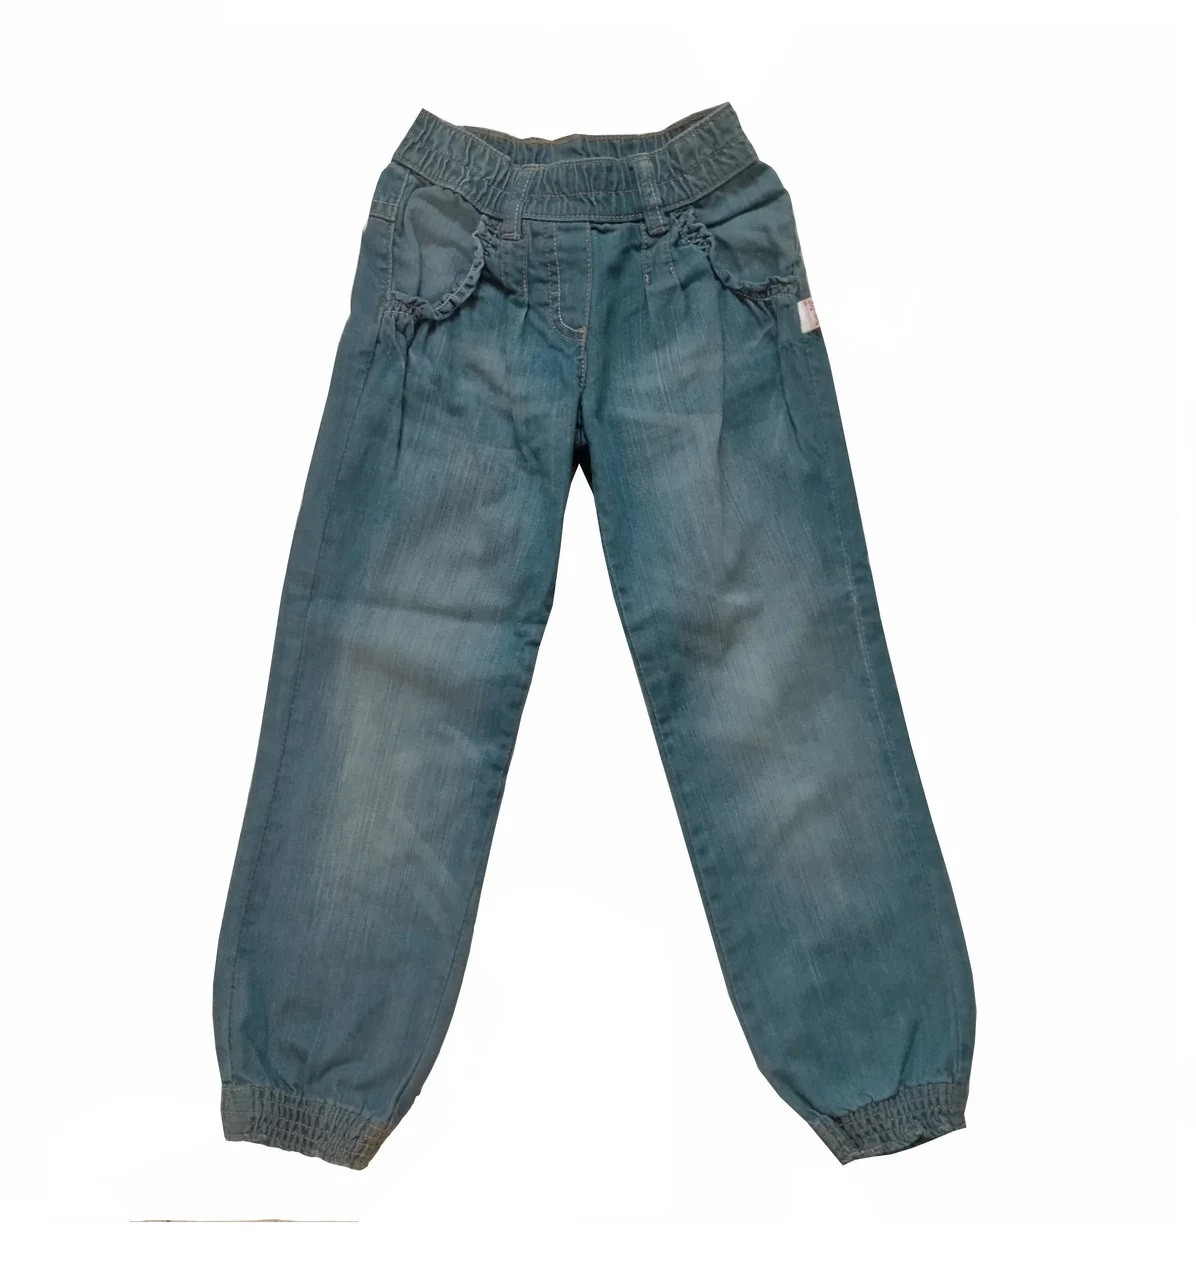 Дитячі джинси для дівчинки весна-літо на гумці 92, 98 см